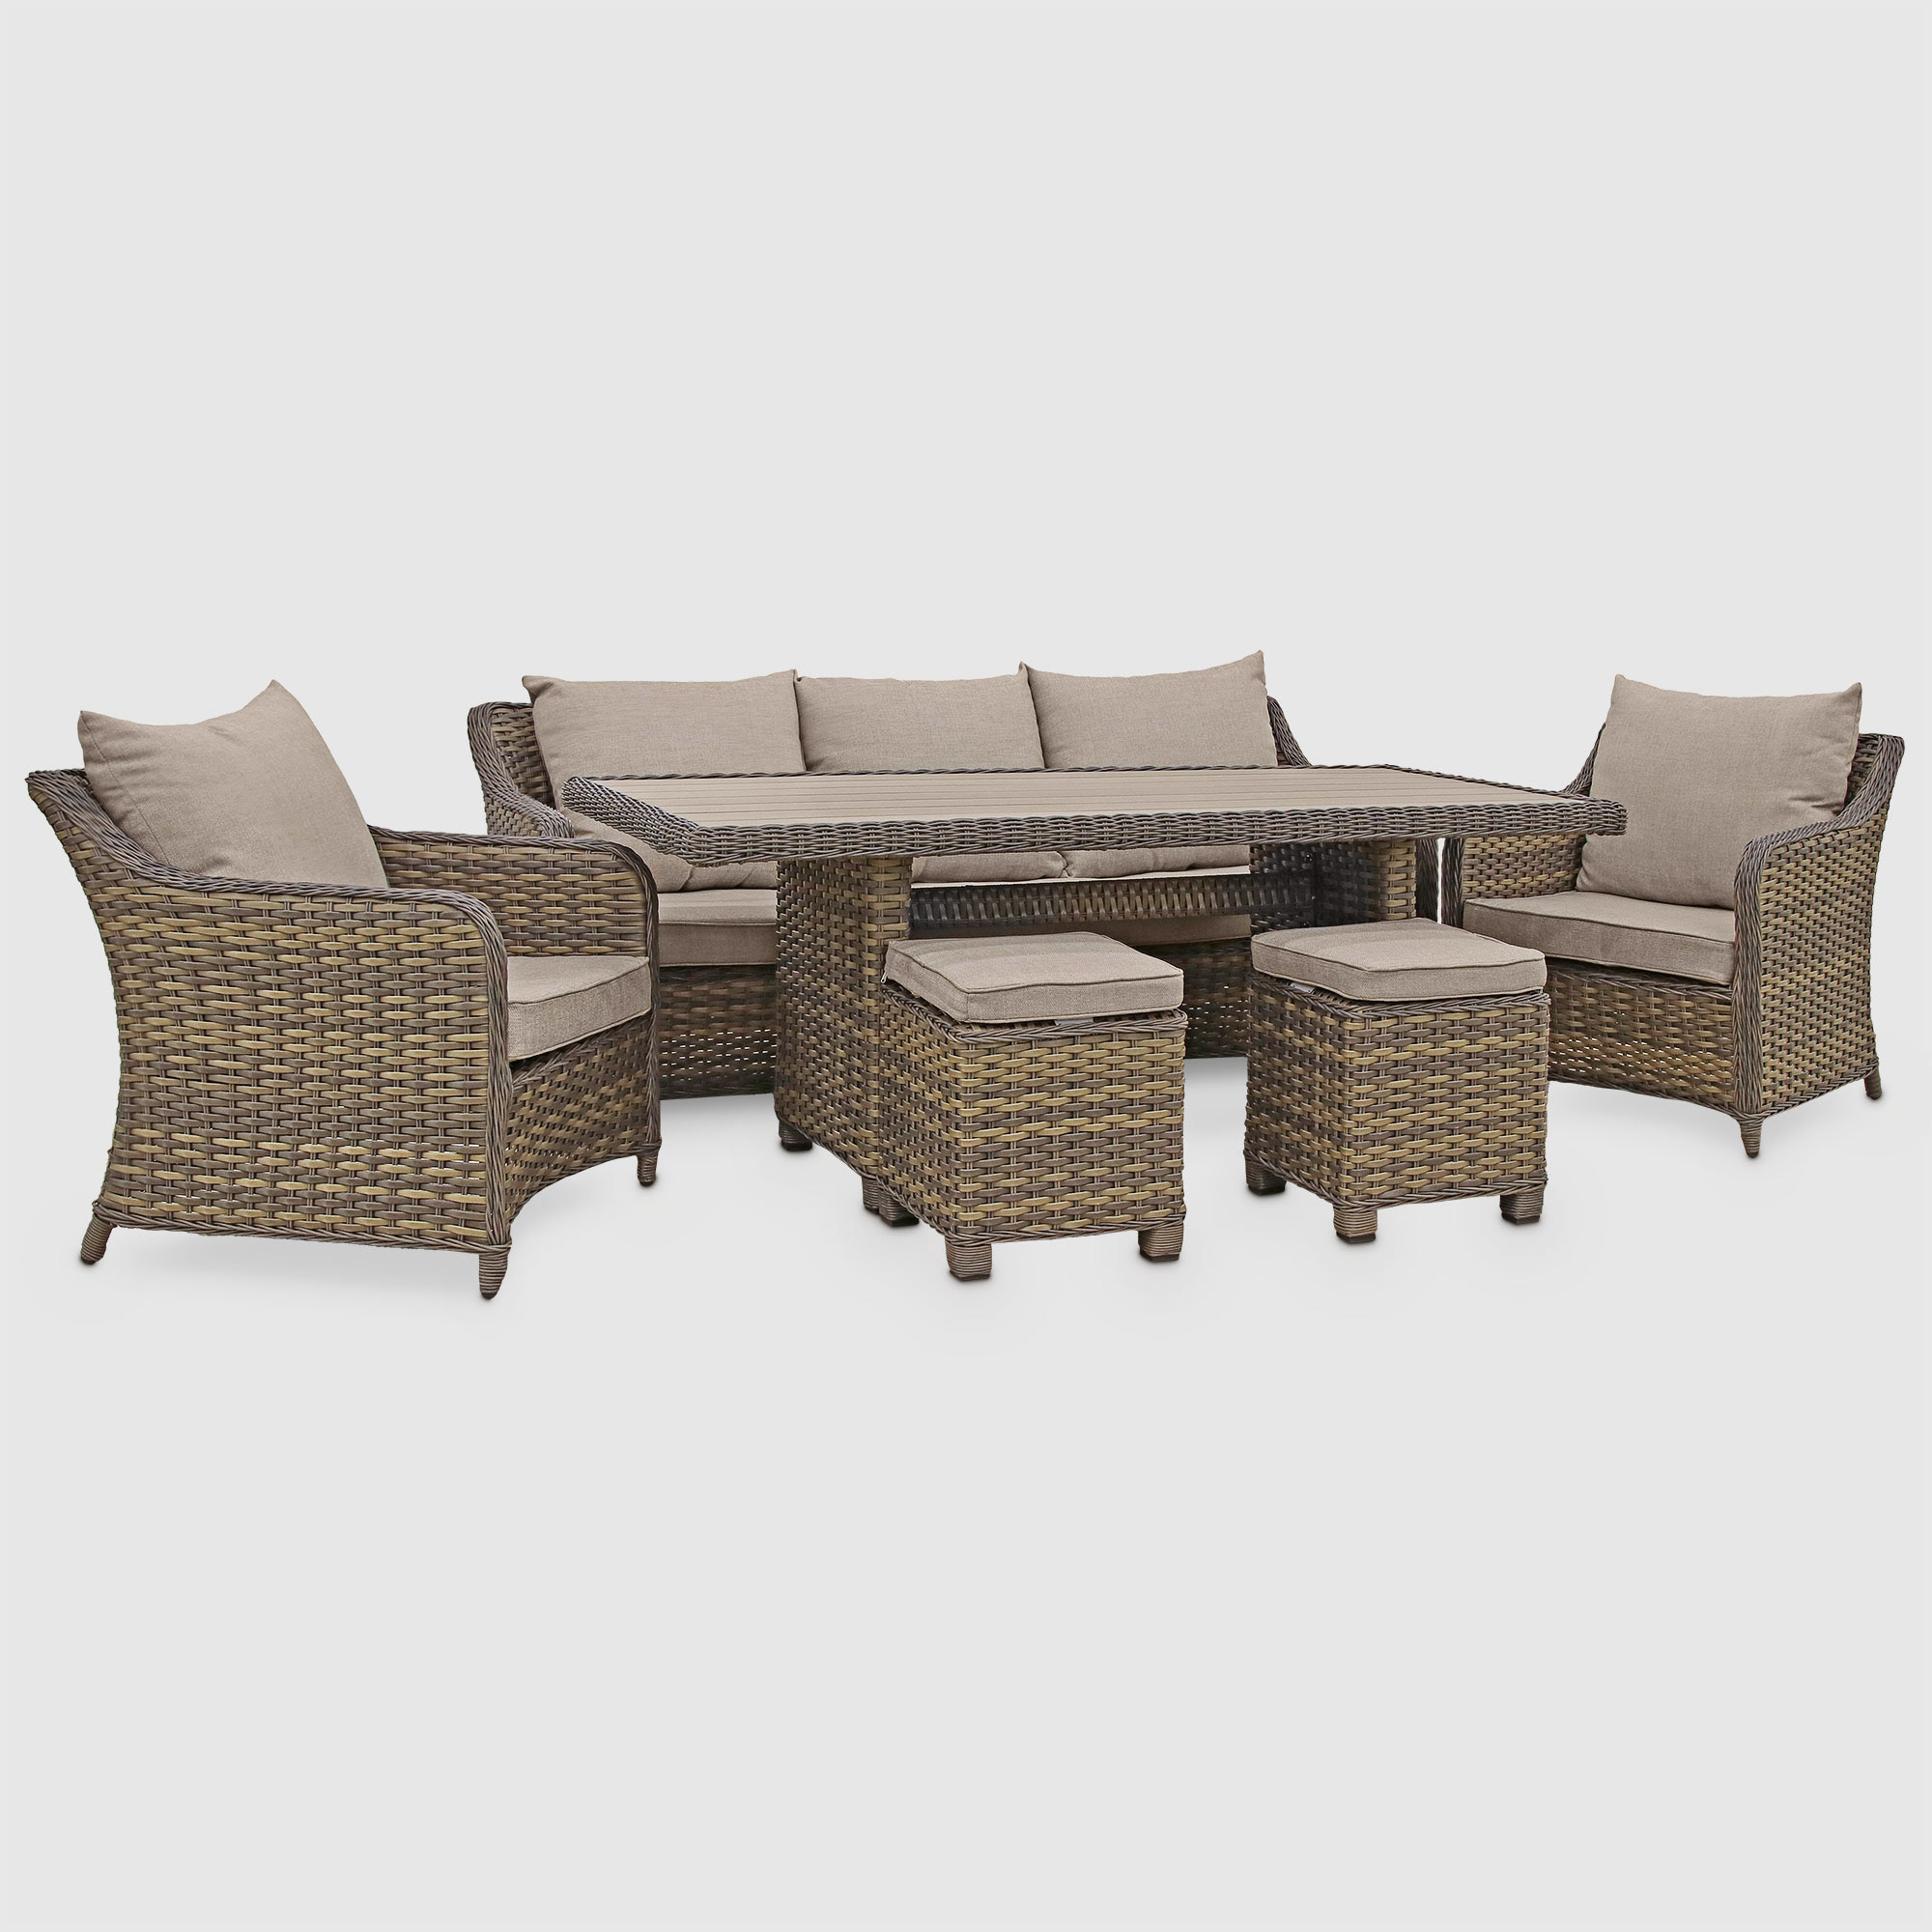 Комплект мебели Yuhang серо-коричневый с бежевым 6 предметов, цвет бежевый, размер 190х82х76